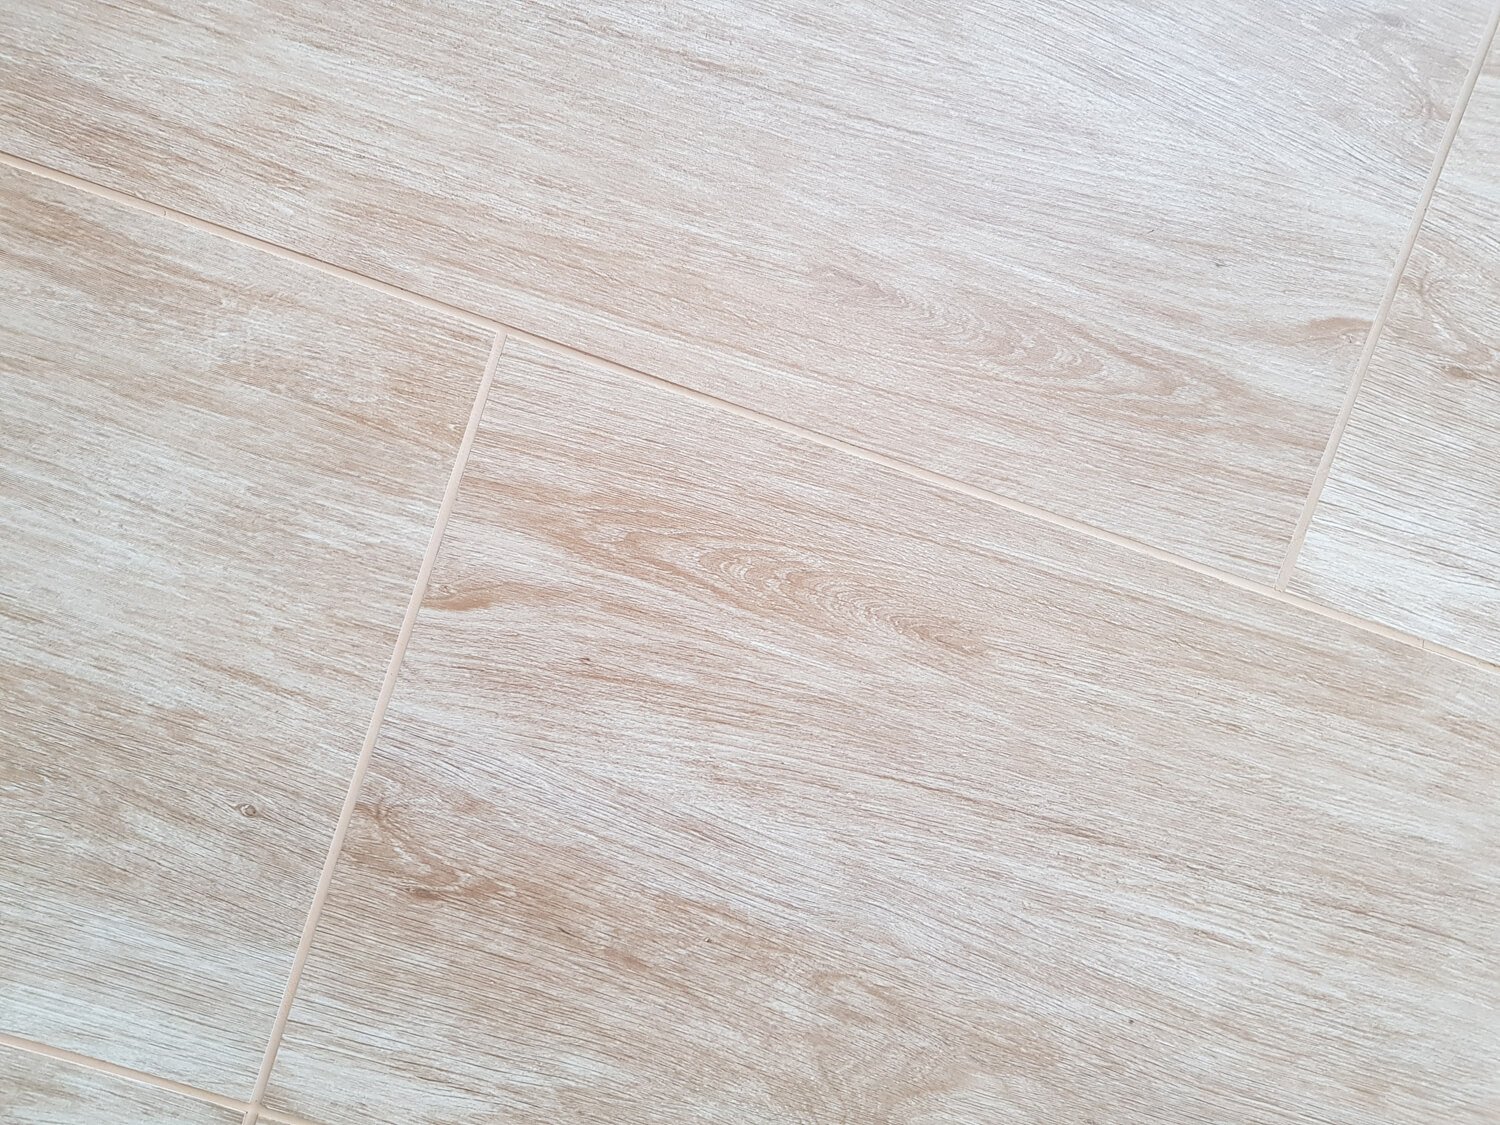 Petrus Oak Ceramic Floor Tile